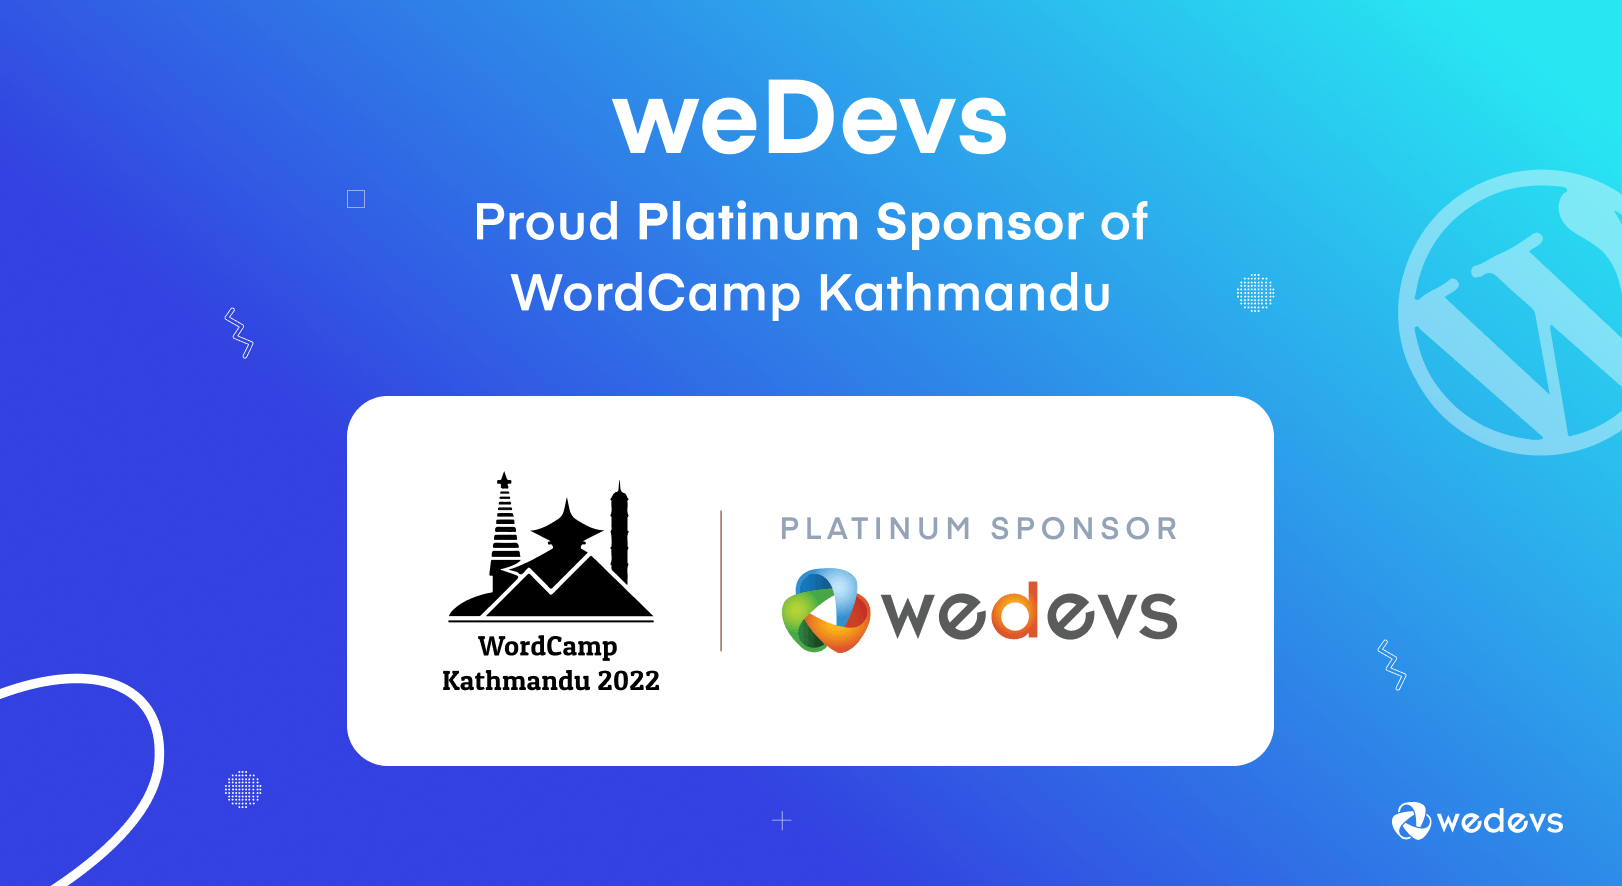 weDevs is a Proud Platinum Sponsor of  WordCamp Kathmandu 2022